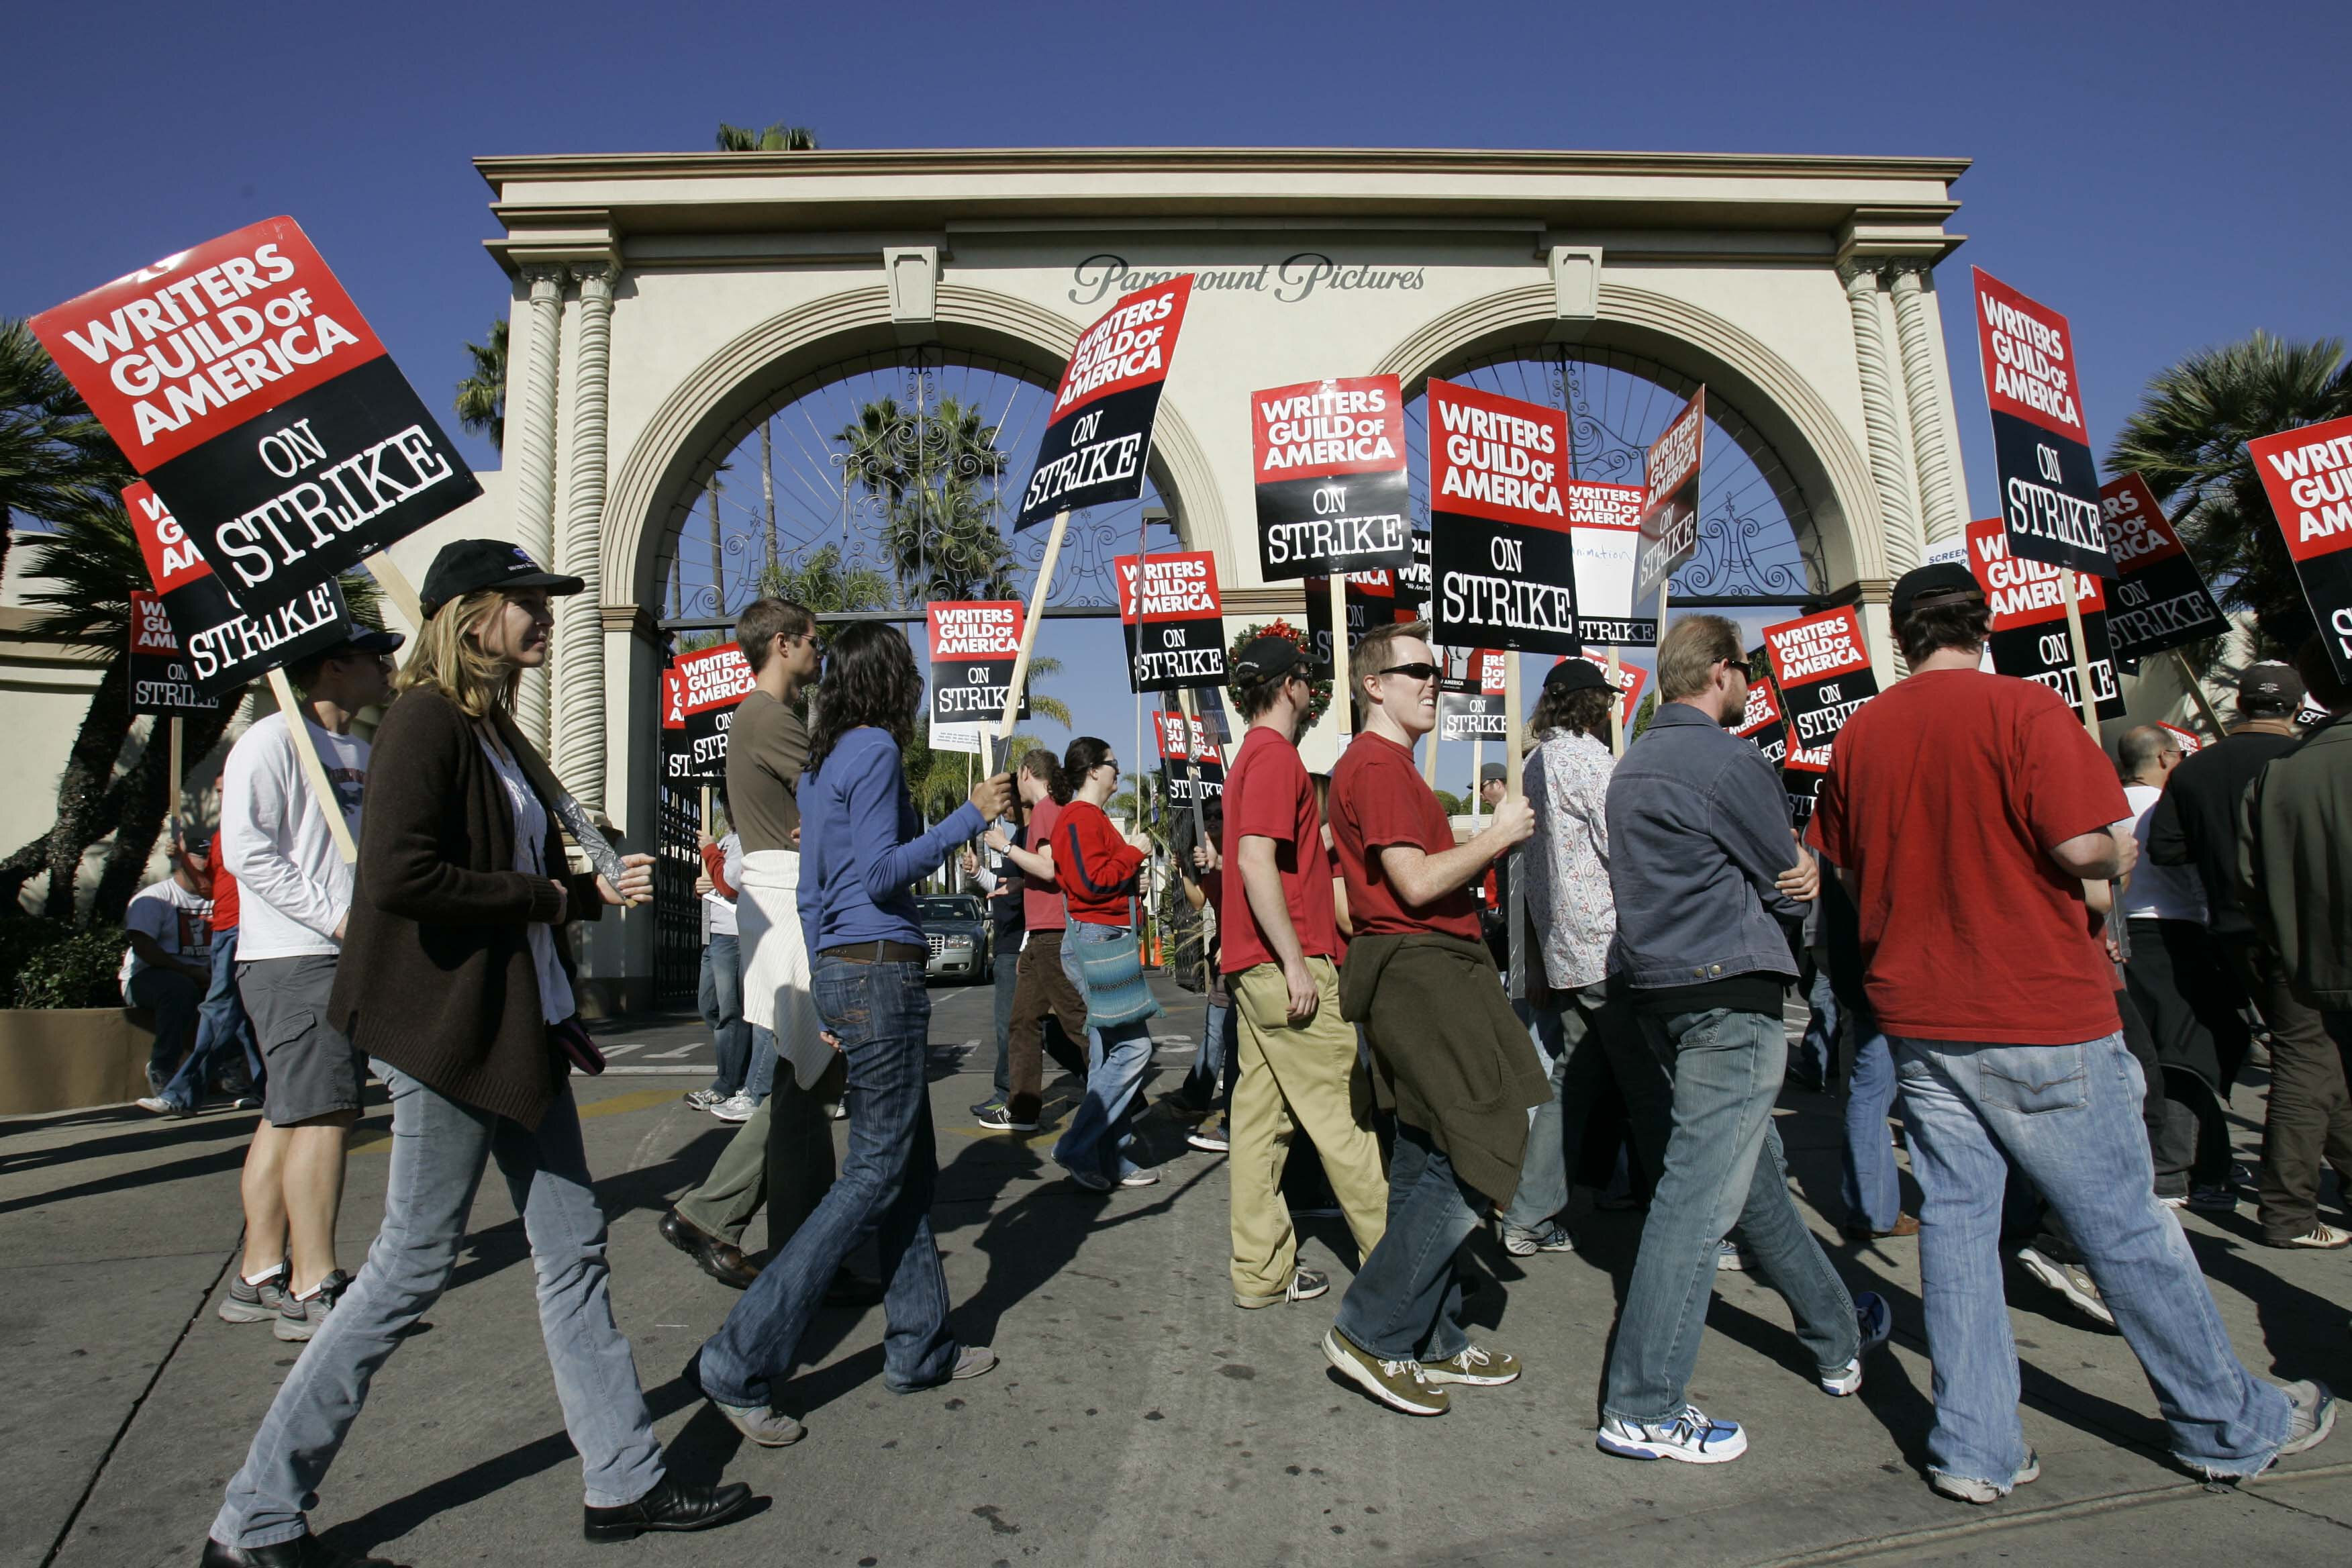 La vez anterior que el sindicato se fue a huelga fue en 2007 (Foto AP/Nick Ut, archivo)